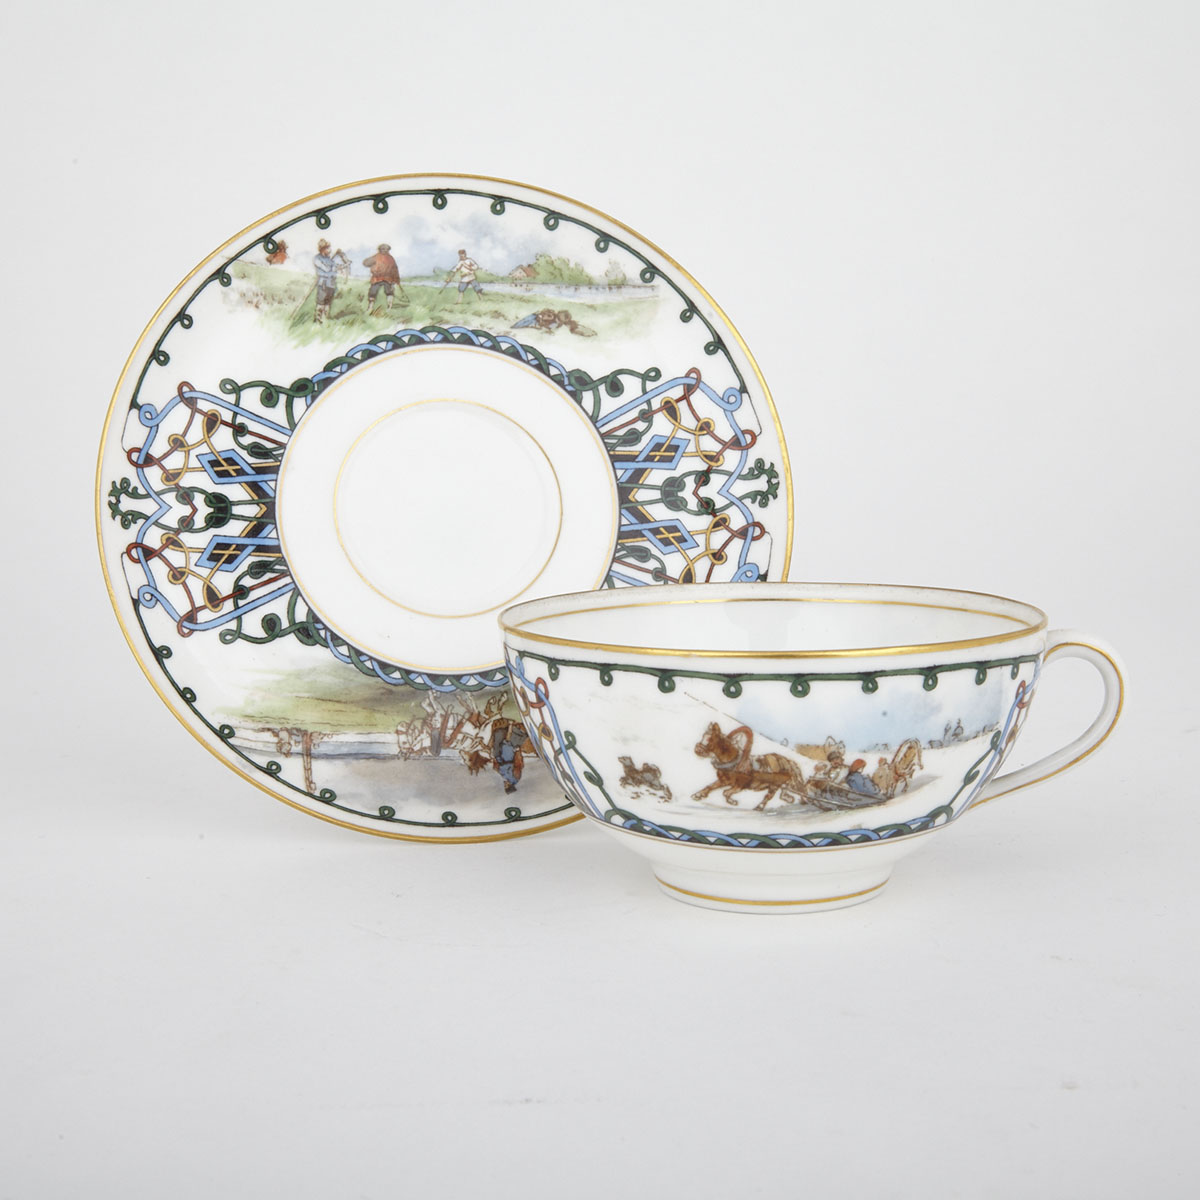 Kornilow Tea Cup and Saucer, c.1900